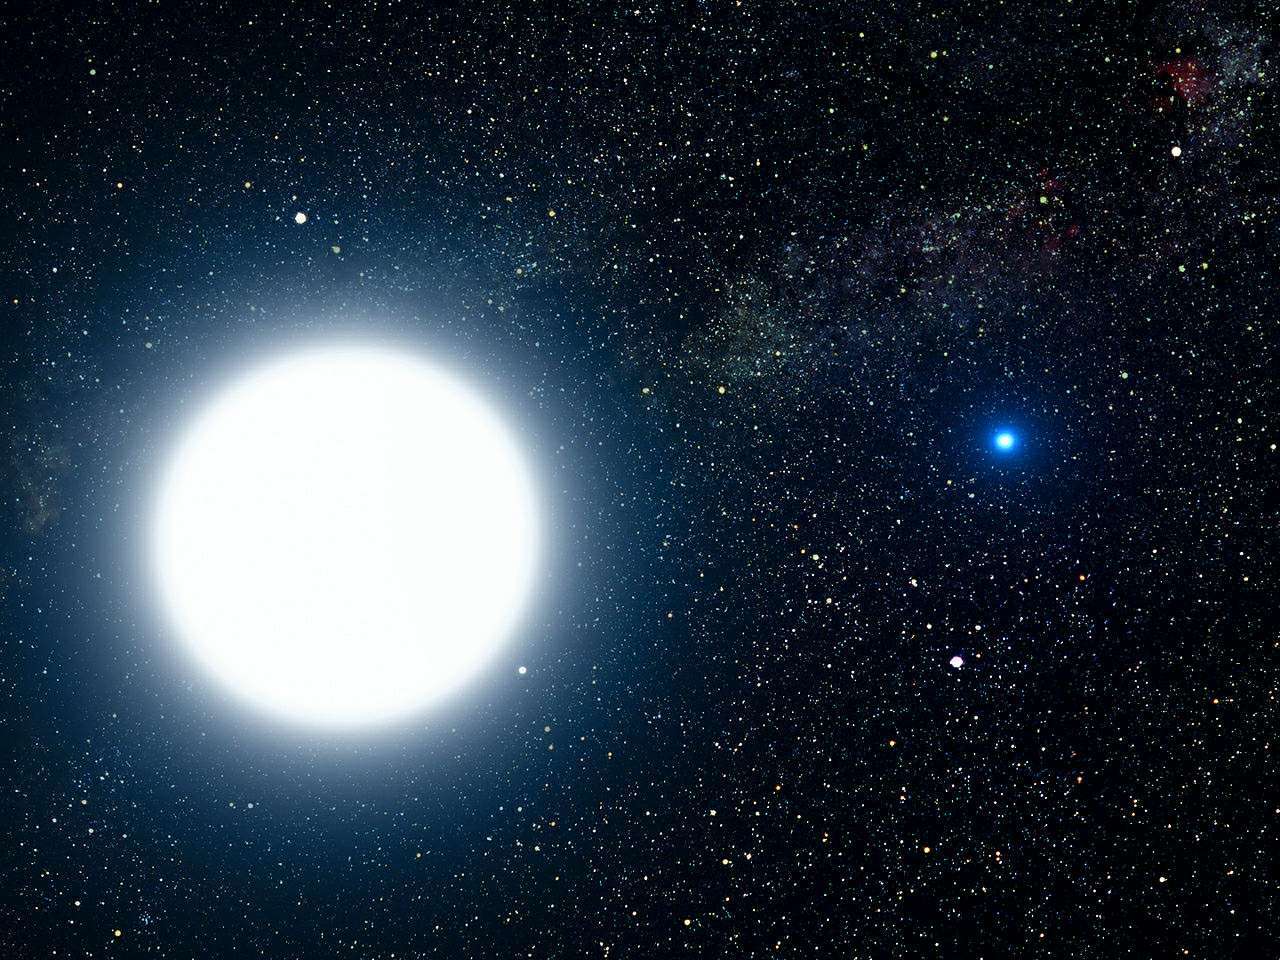 အာဖရိကနွယ် Dogon သည် Sirius ၏ မမြင်နိုင်သော အဖော်ကြယ်အကြောင်း မည်သို့သိသနည်း။ ၃